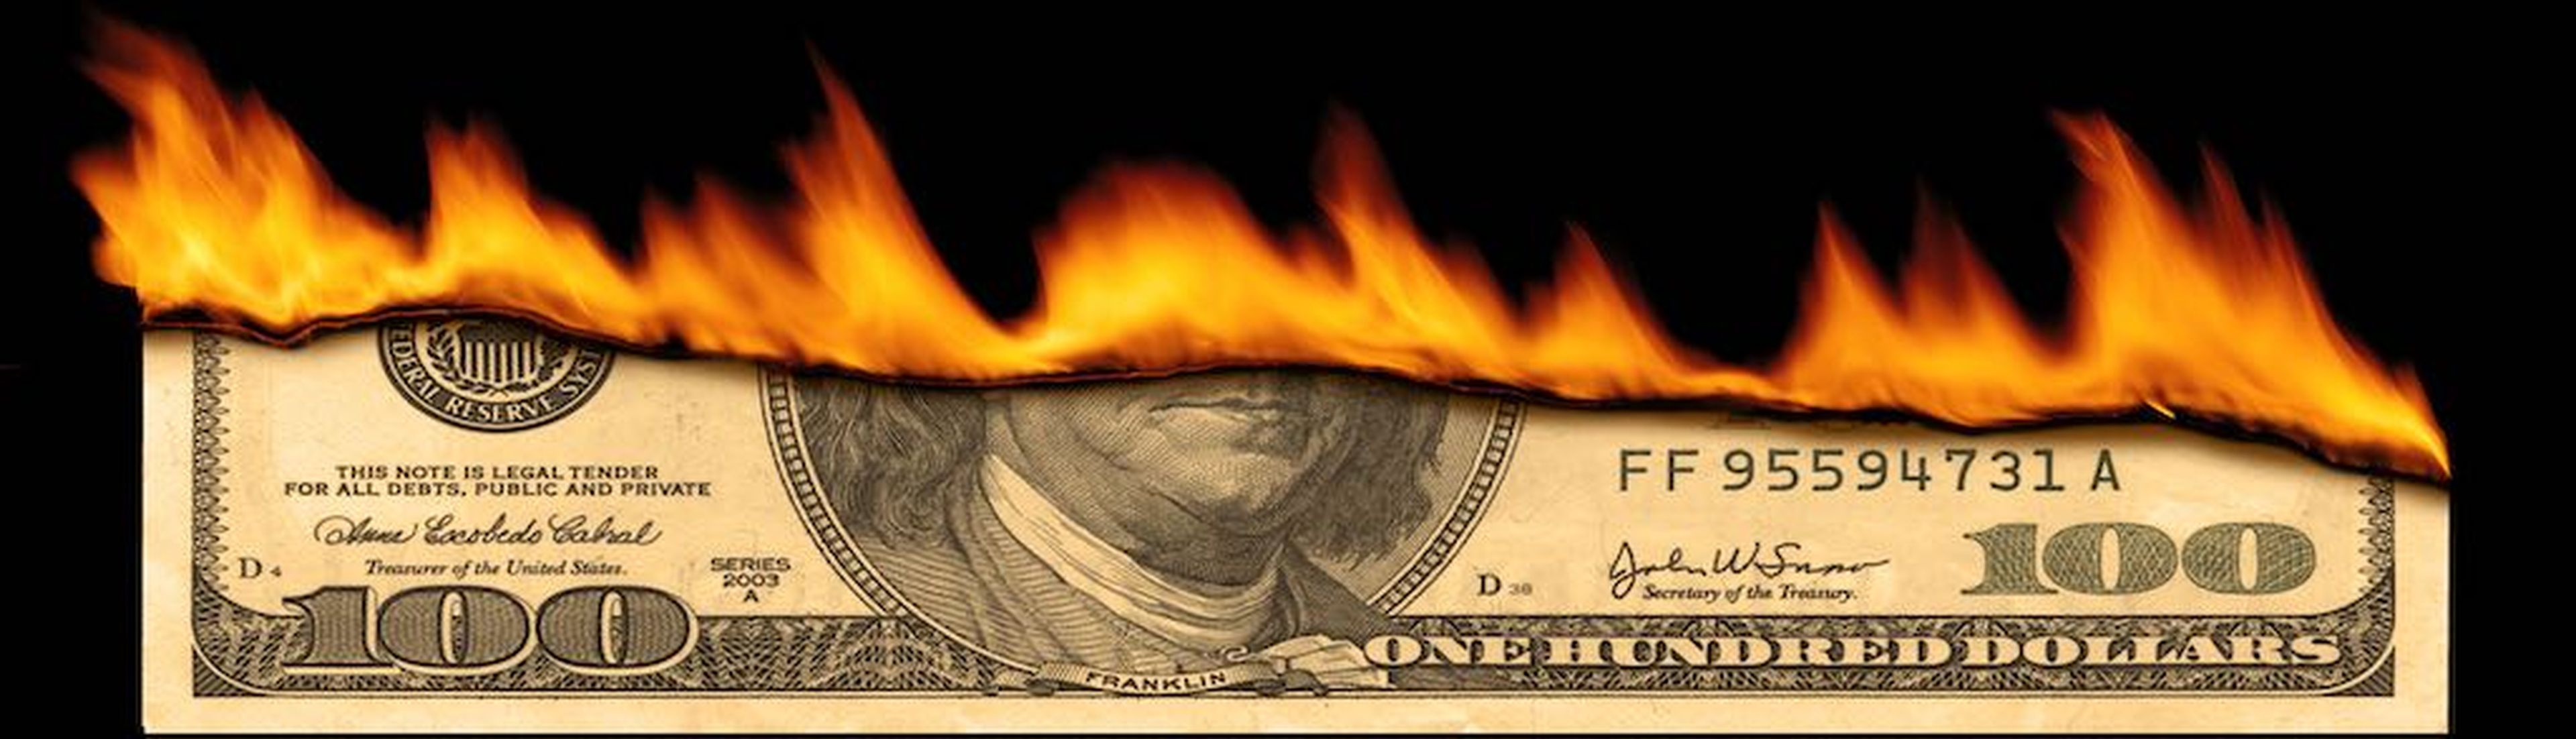 Dollar note burning.